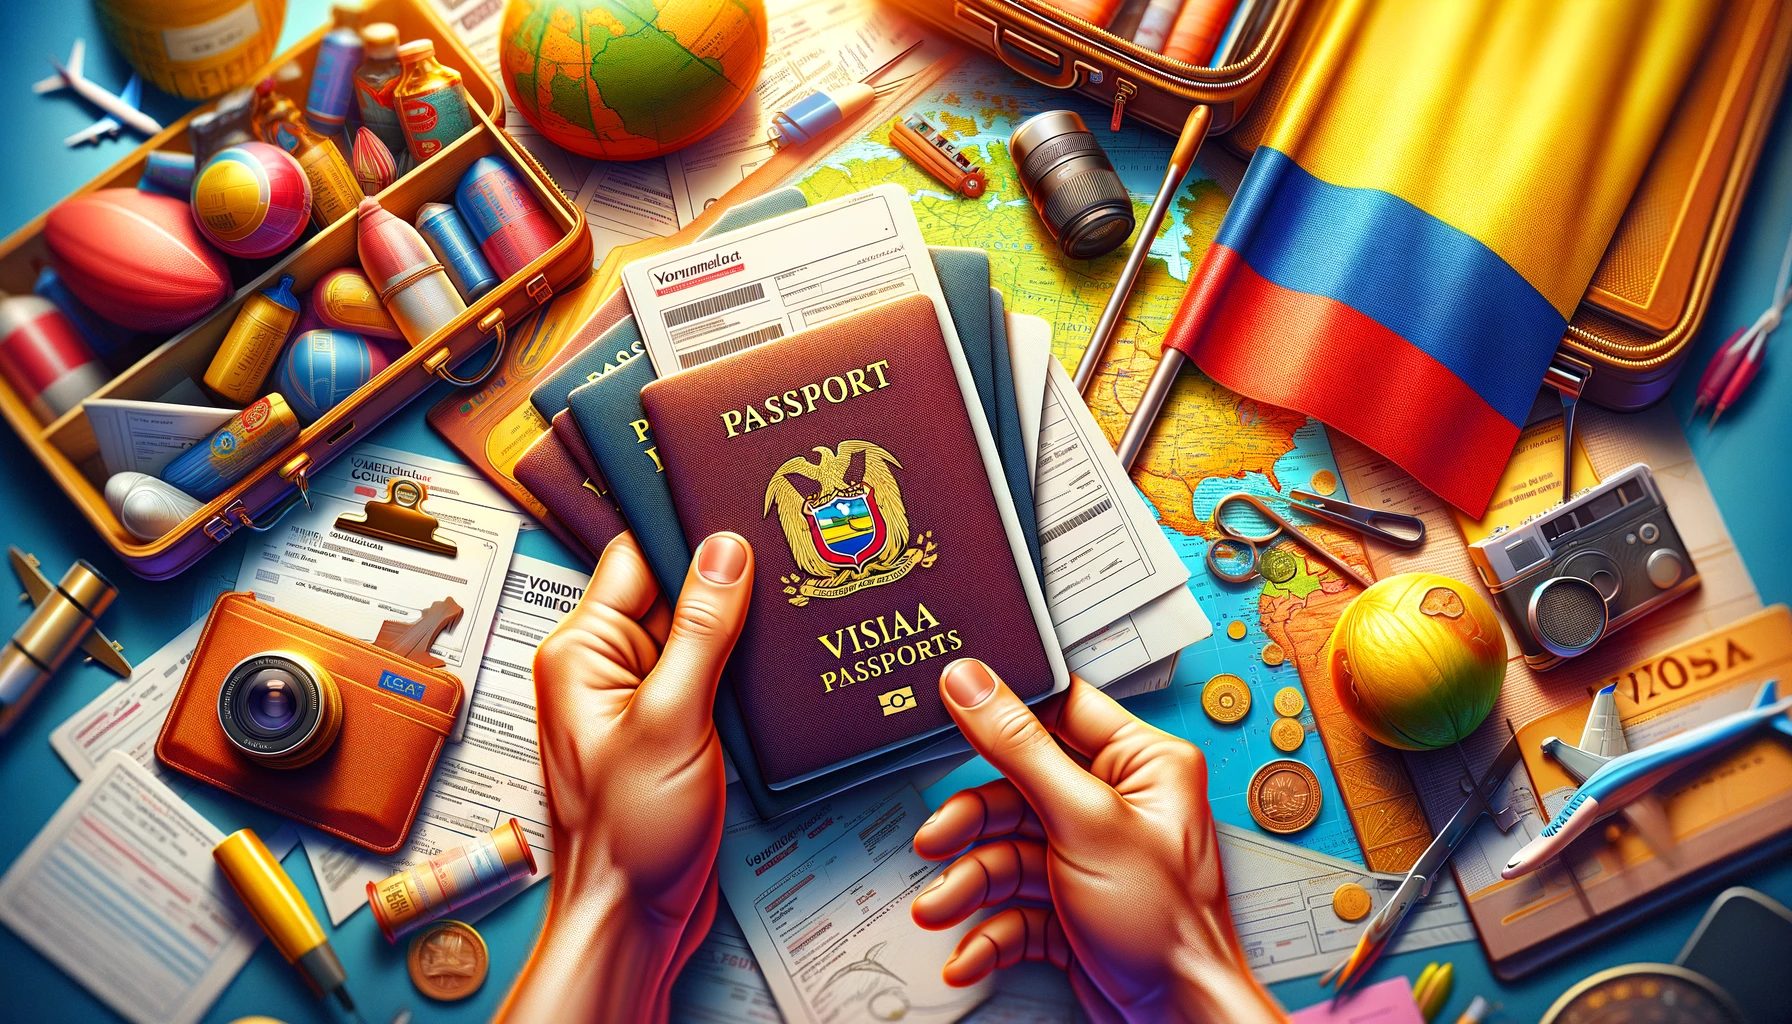 Exigences de visa pour la Colombie, règles d'entrée en Colombie, politiques de visa en Colombie, comment obtenir un visa pour la Colombie, règles d'entrée en Colombie, informations sur le visa de visiteur en Colombie, documentation de voyage en Colombie, processus de demande de visa pour la Colombie, guide des visas touristiques en Colombie, procédures d'entrée en Colombie.